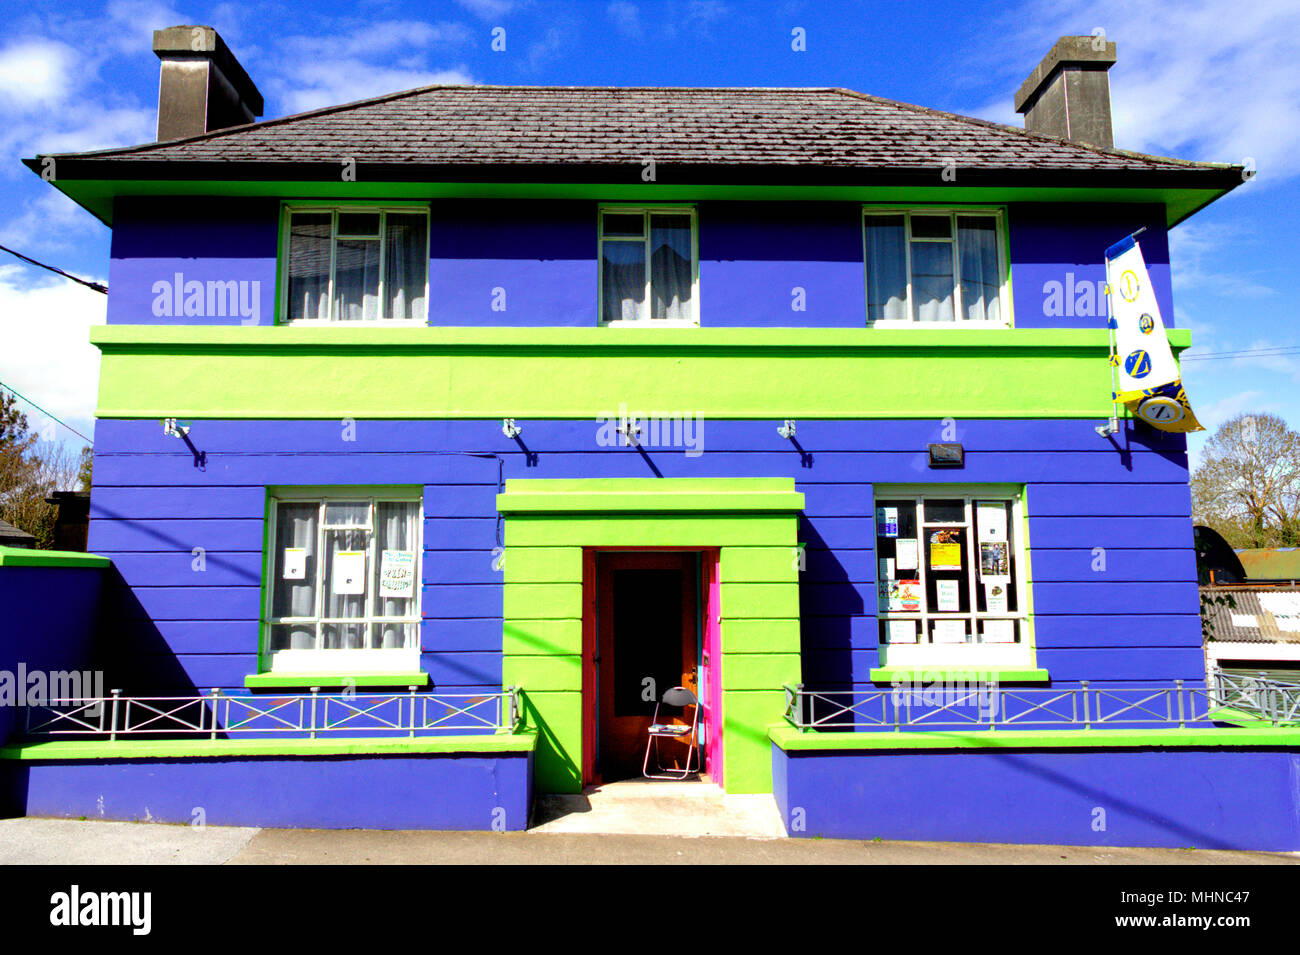 Edificio de ladrillo de colores brillantes o de color azul claro y verde , una antigua casa nacional de pie en el sol del mediodía. Foto de stock